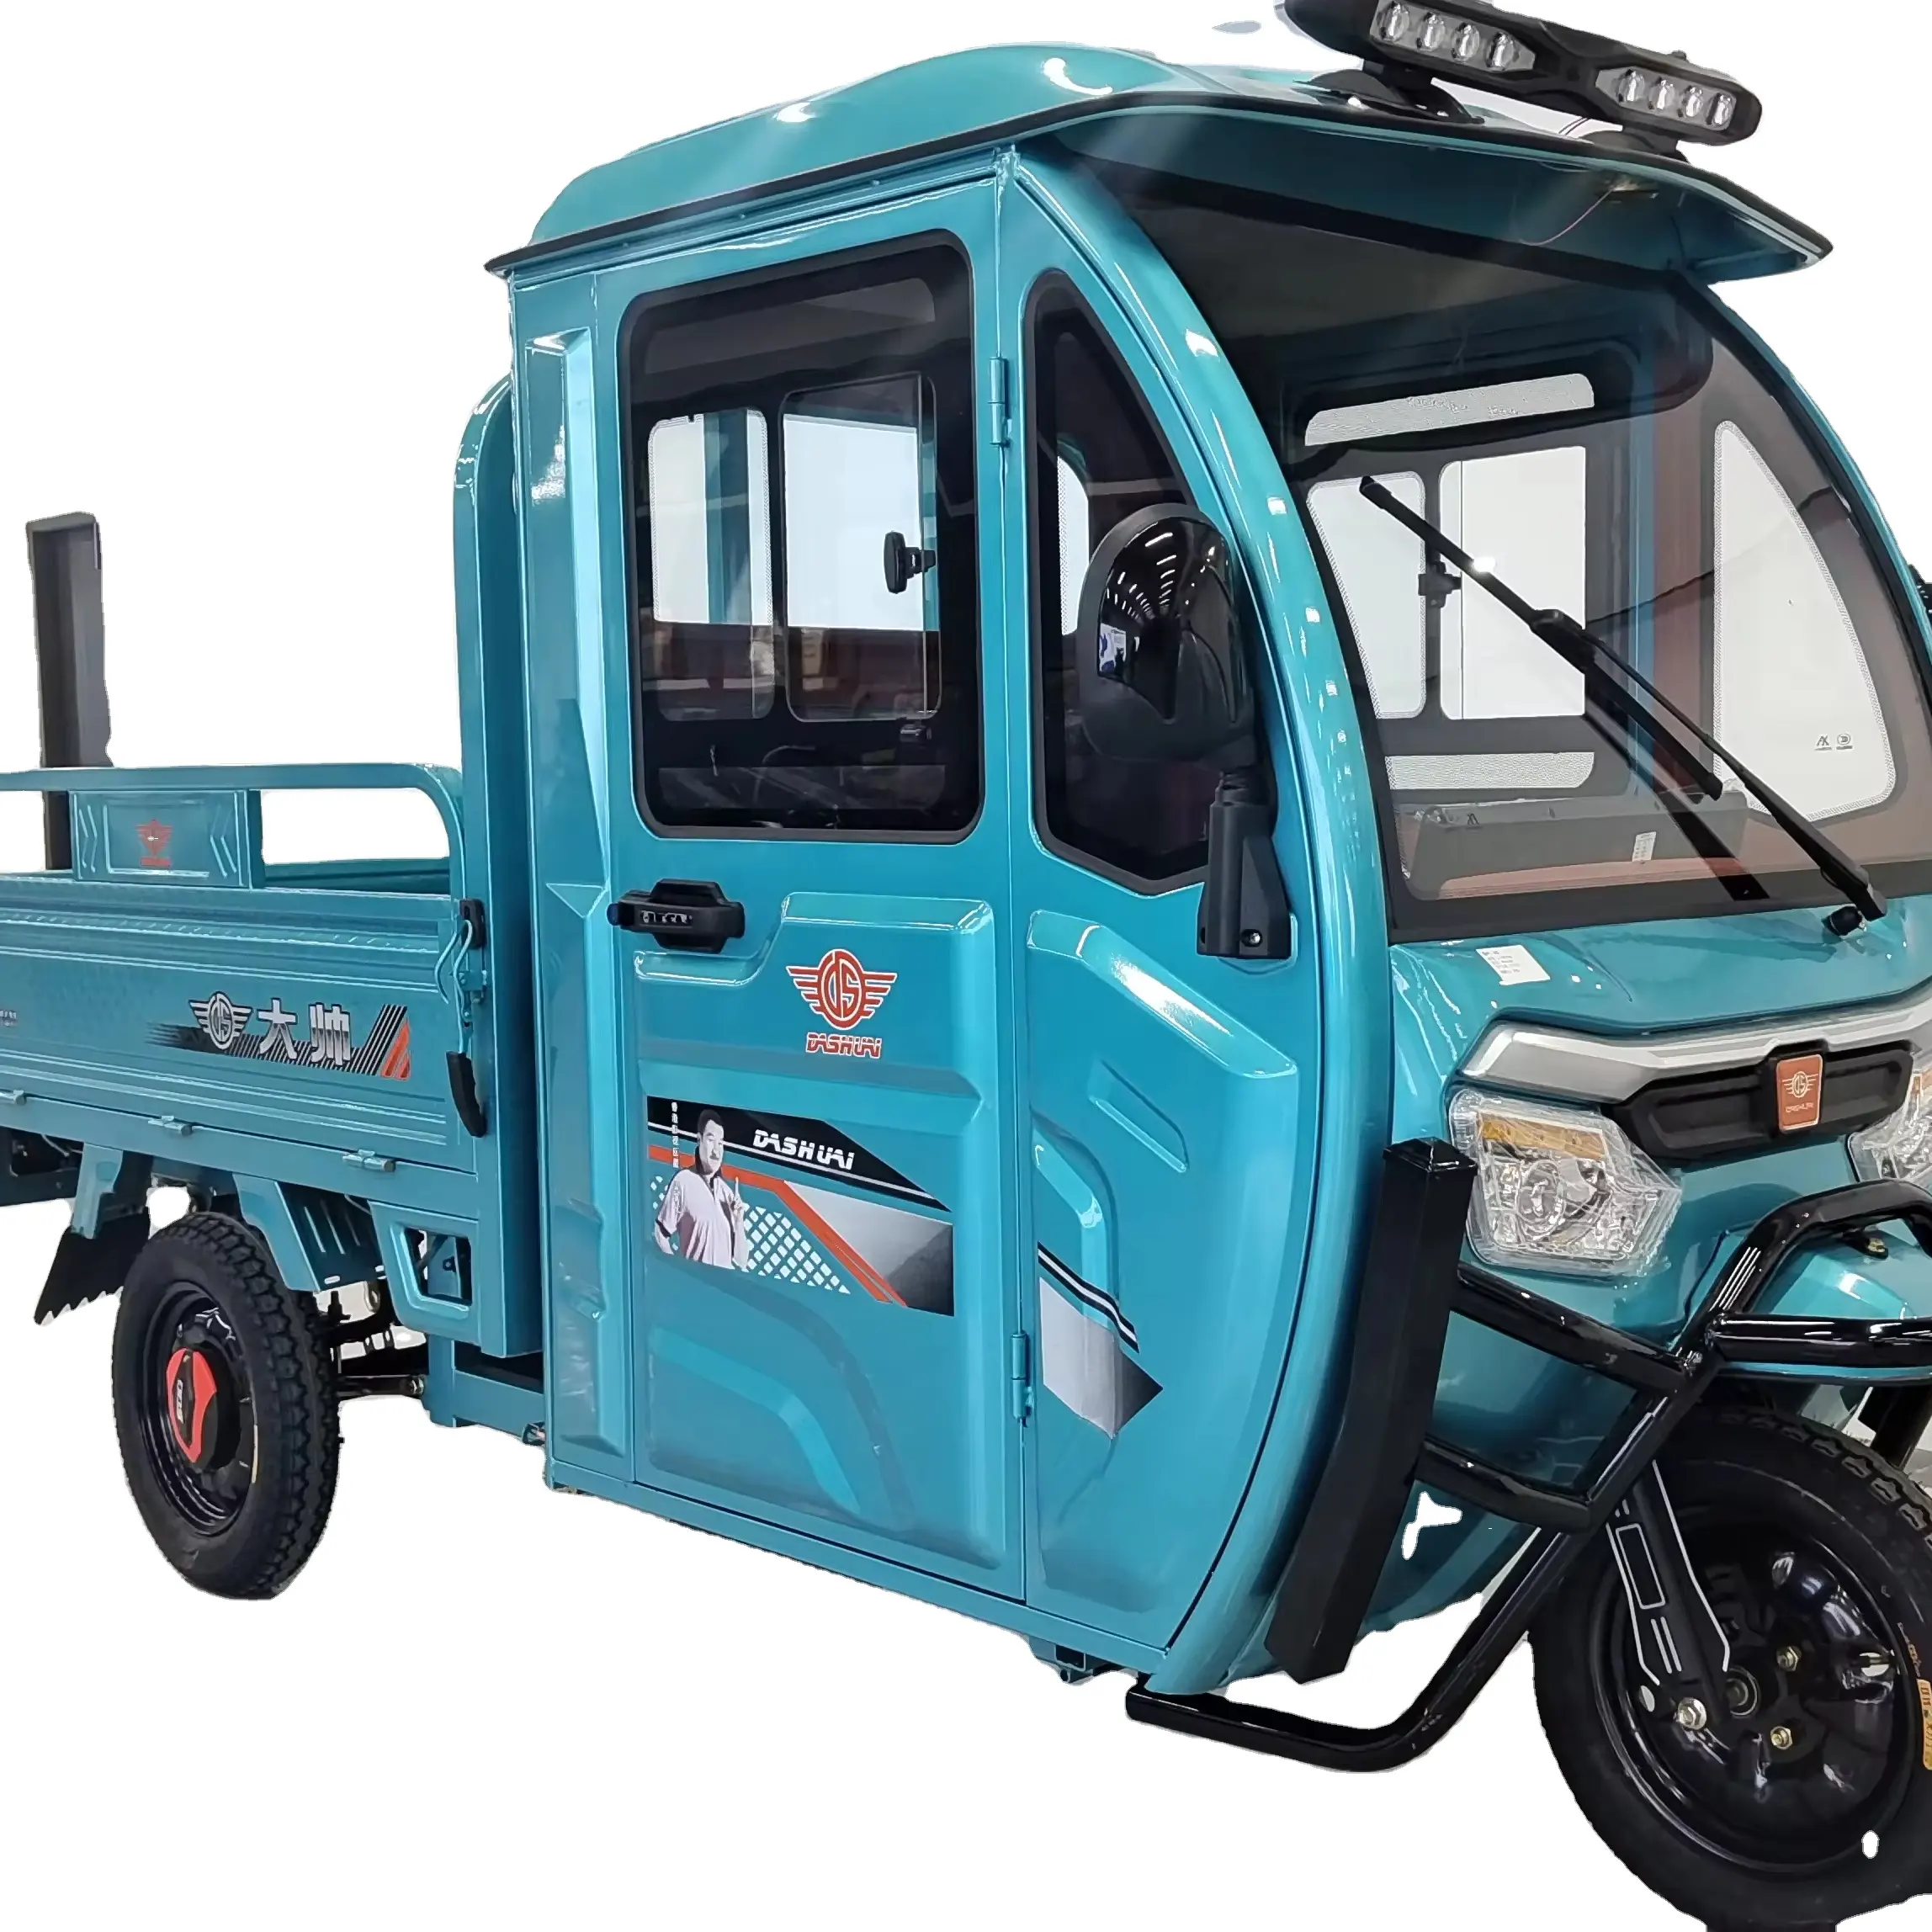 Triciclo elétrico de carga, triciclo com três rodas, tuk tuk, bicicleta de 3 rodas com motor de 1000w e cama de carga